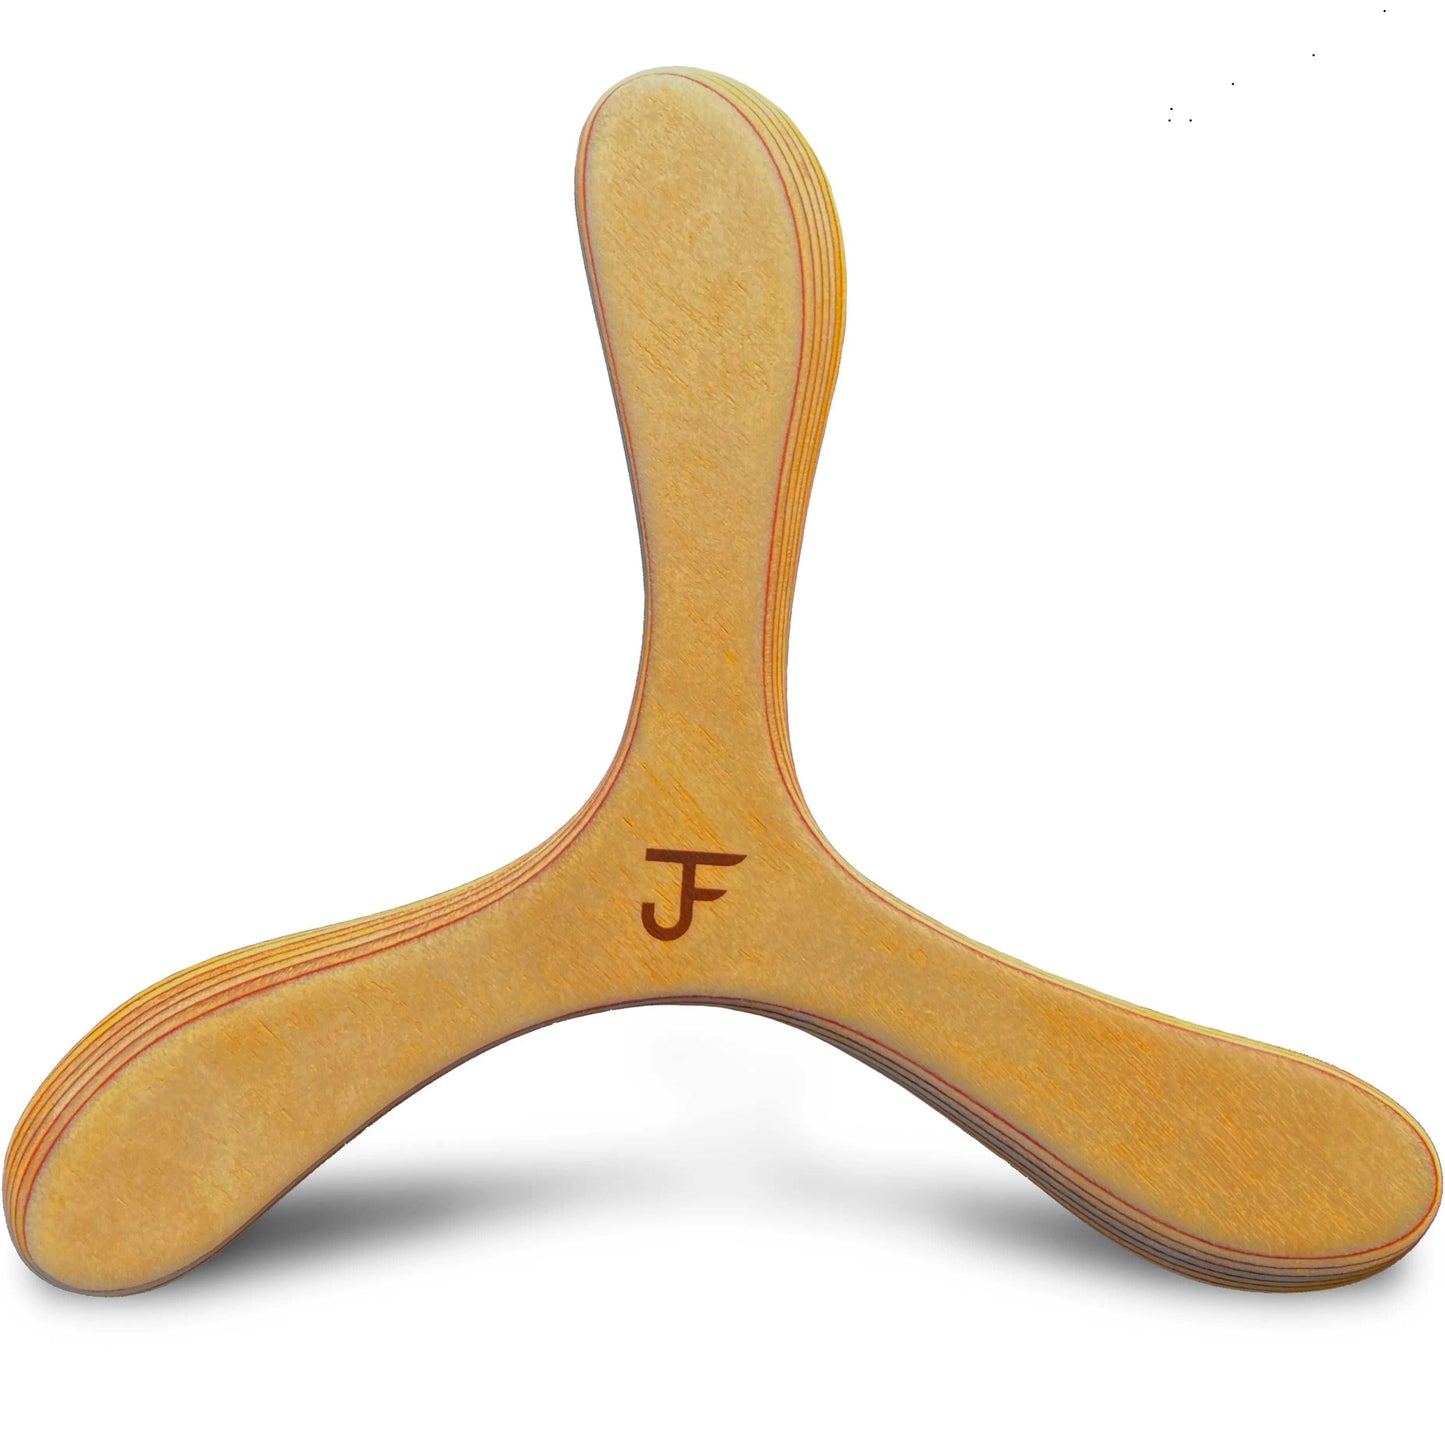 JF BUMERANG - Modell MÜNCHEN hell  - Rechtshänder - Holz Boomerang - Handgefertigter Bumerang aus der Vater-Sohn Manufaktur JF Bumerang.